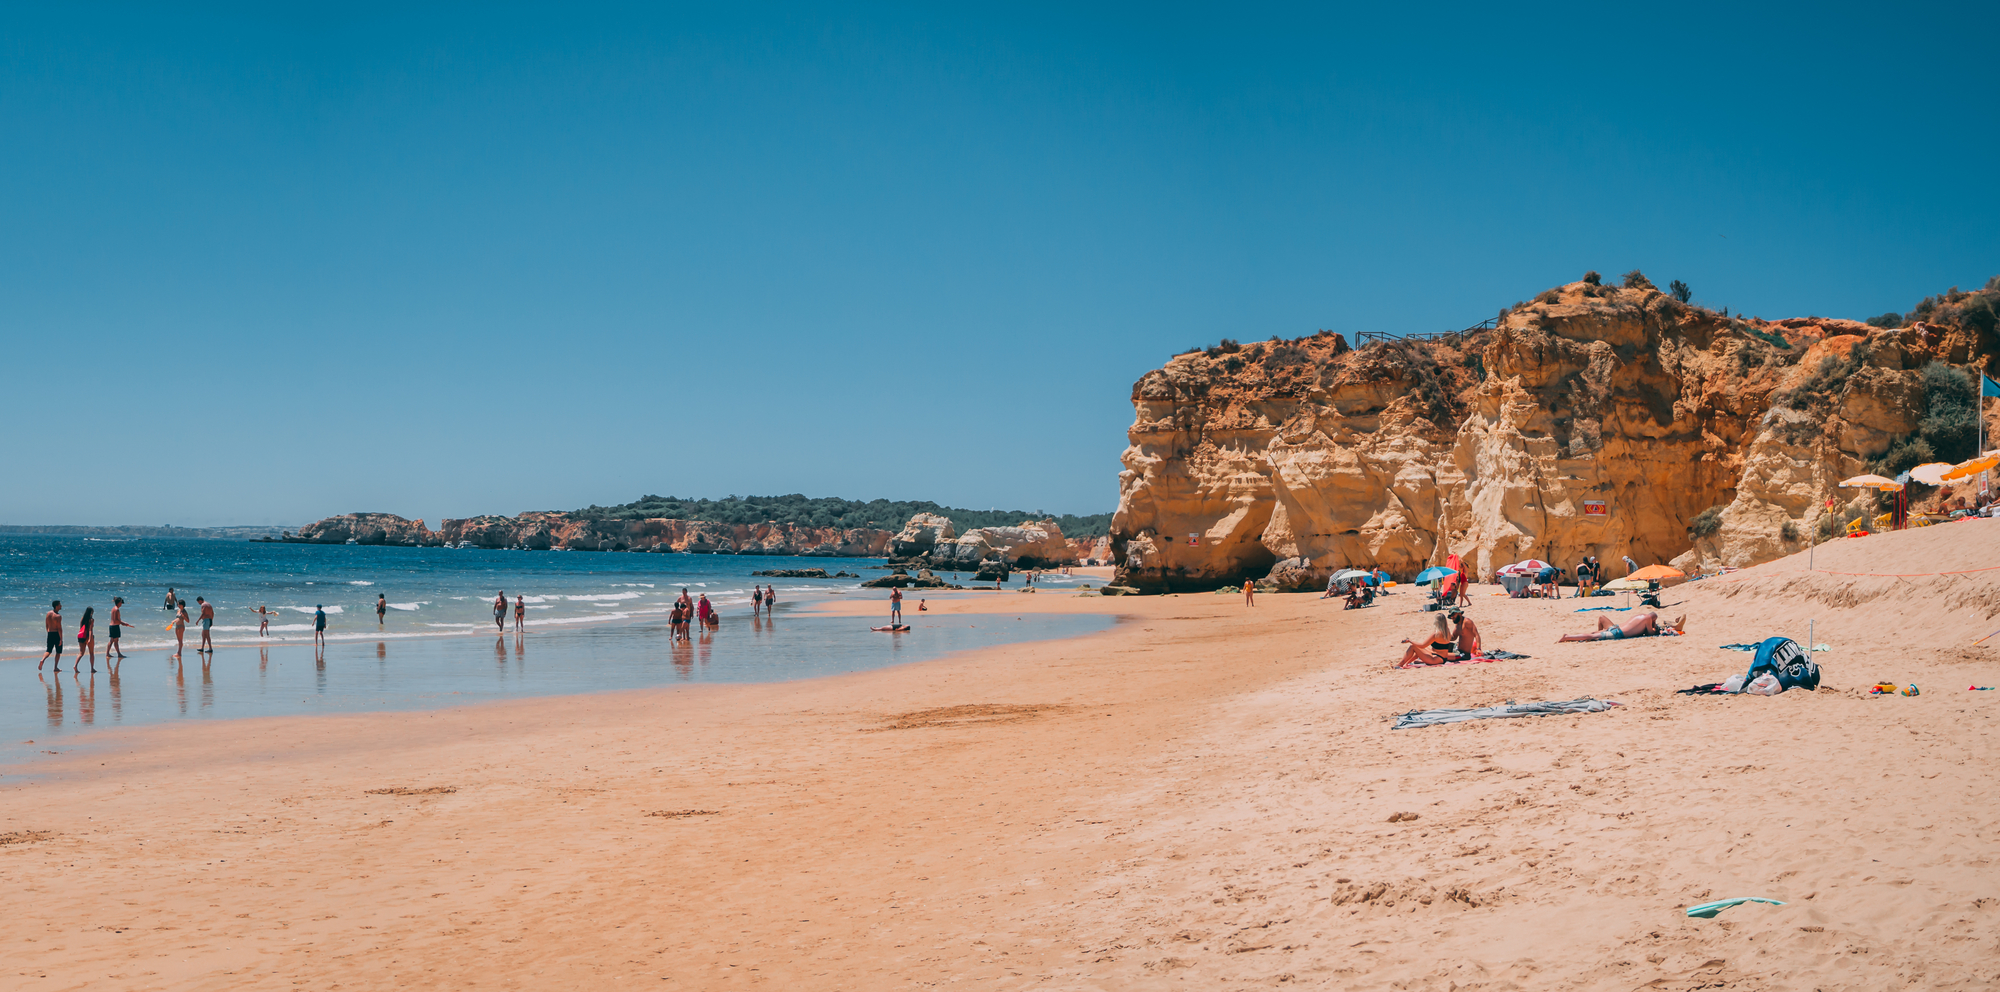 Vue sur la plage de Praia dos Tres Castelos à Portimao, Praia dos Tres Castelos est l'une des plages les plus célèbres de Portimão, Algarve